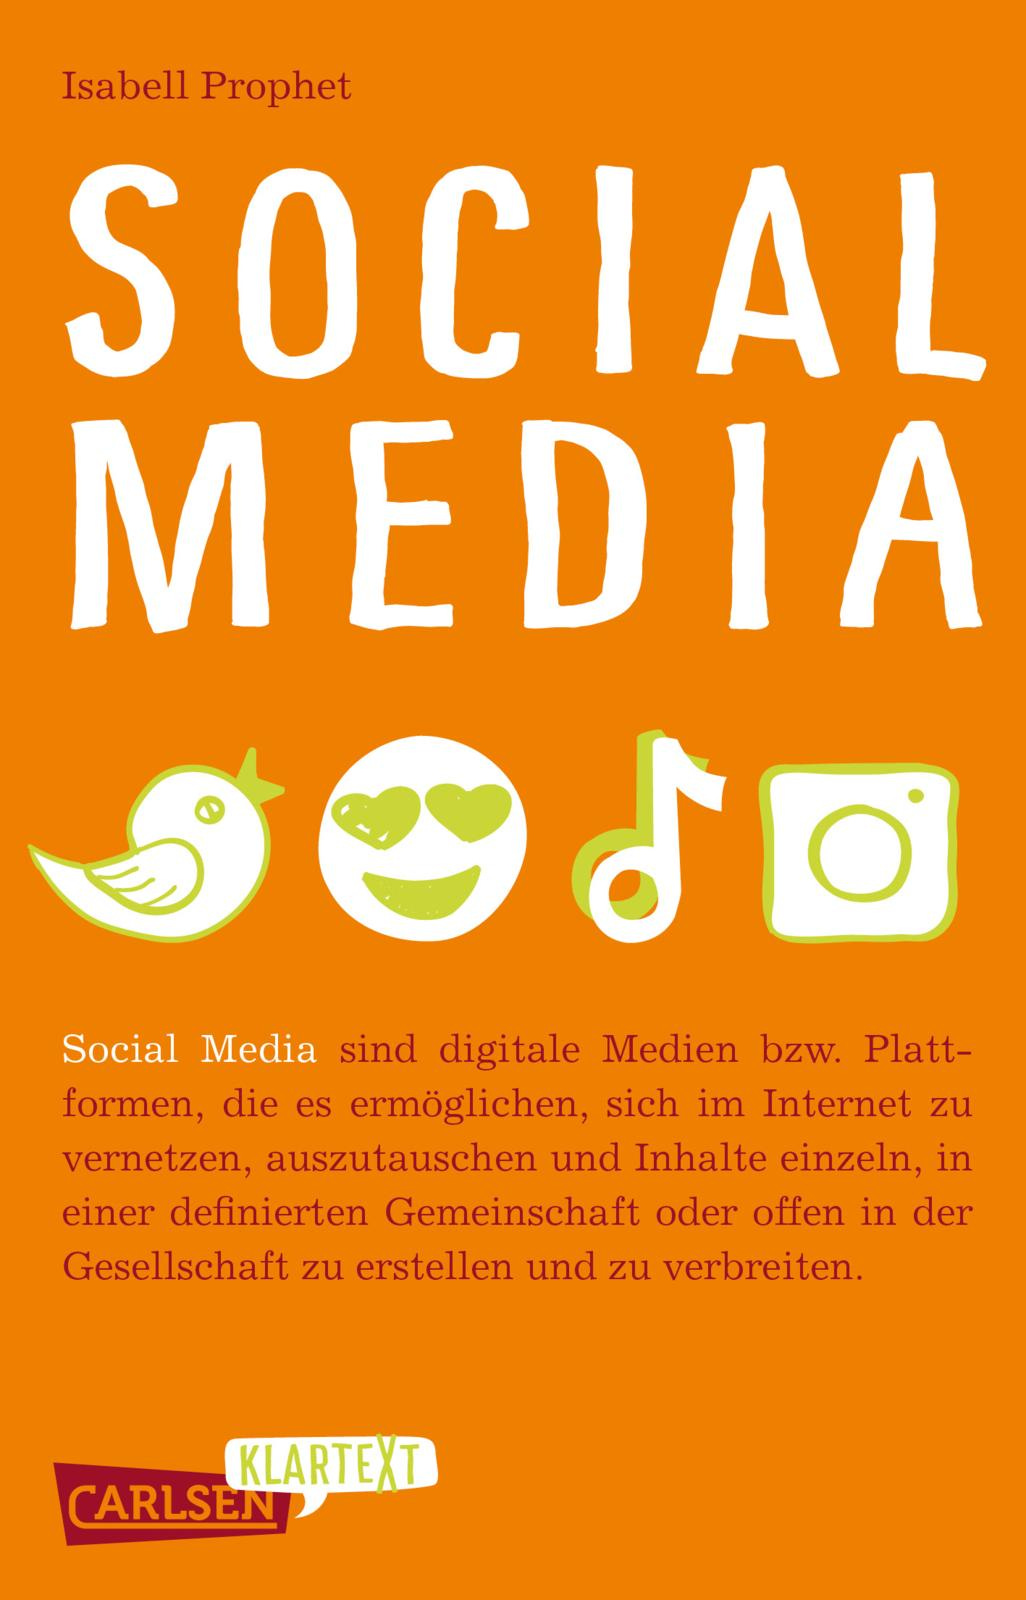 Das Cover zu Carlsen Klartext: Social Media zeigt einen Vogel, ein Emoji mit Herzchen in den Augen, eine Note und eine Kamera.